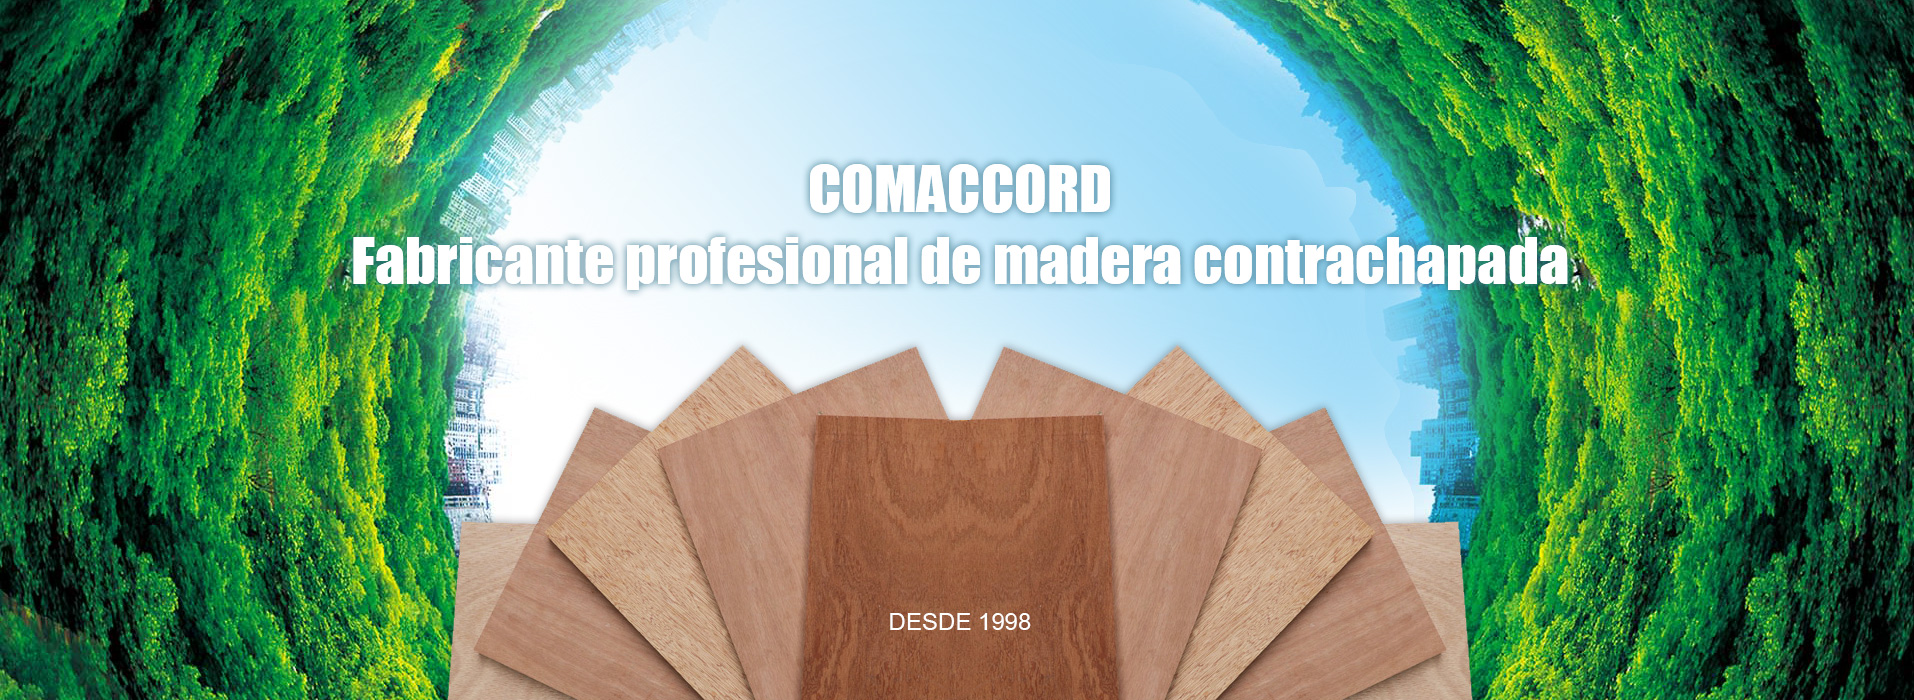 FABRICACIÓN DE MADERA CONTRACHAPADA PROFESIONAL COMACCORD